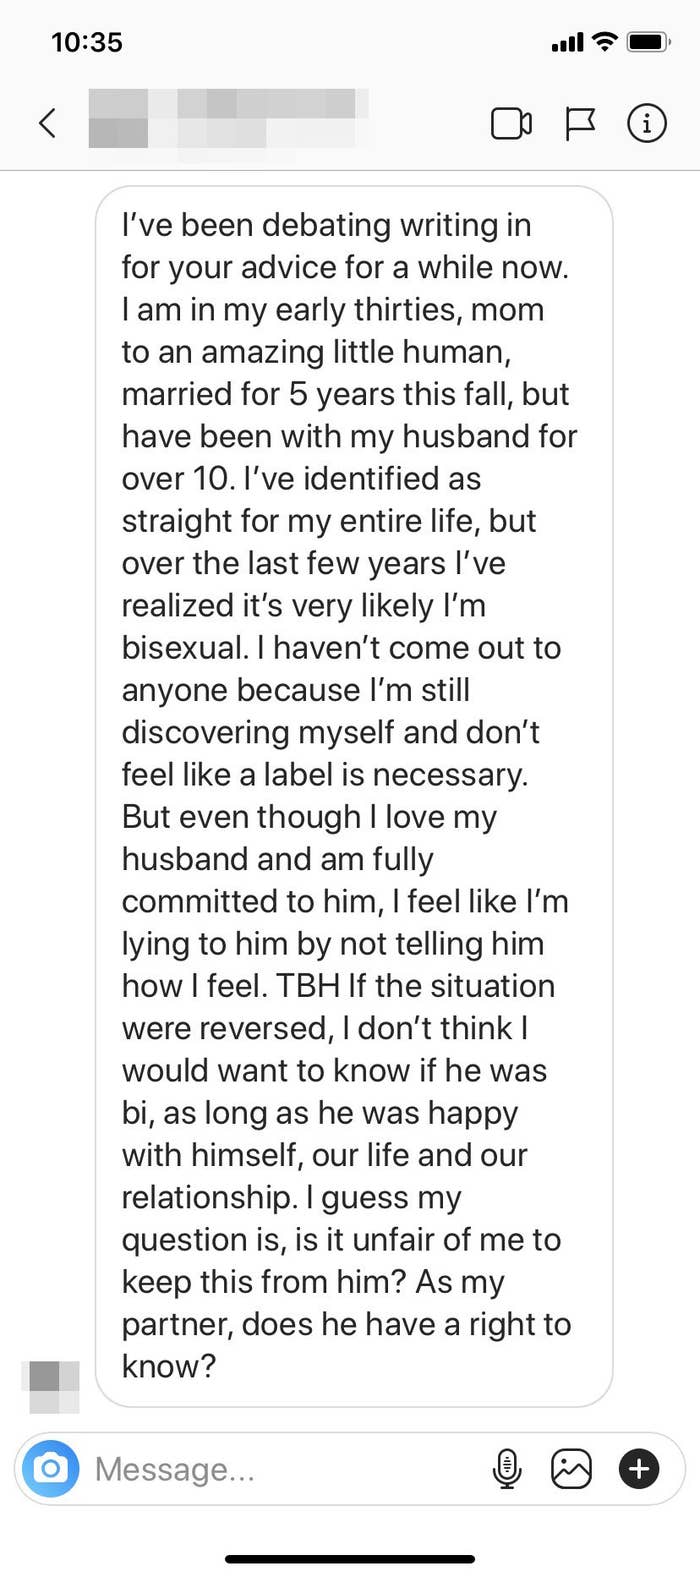 DM的截图从一个女人与她的丈夫已经10年,结婚5。她认为她可能是双性恋,想知道她的丈夫有权知道这一点。